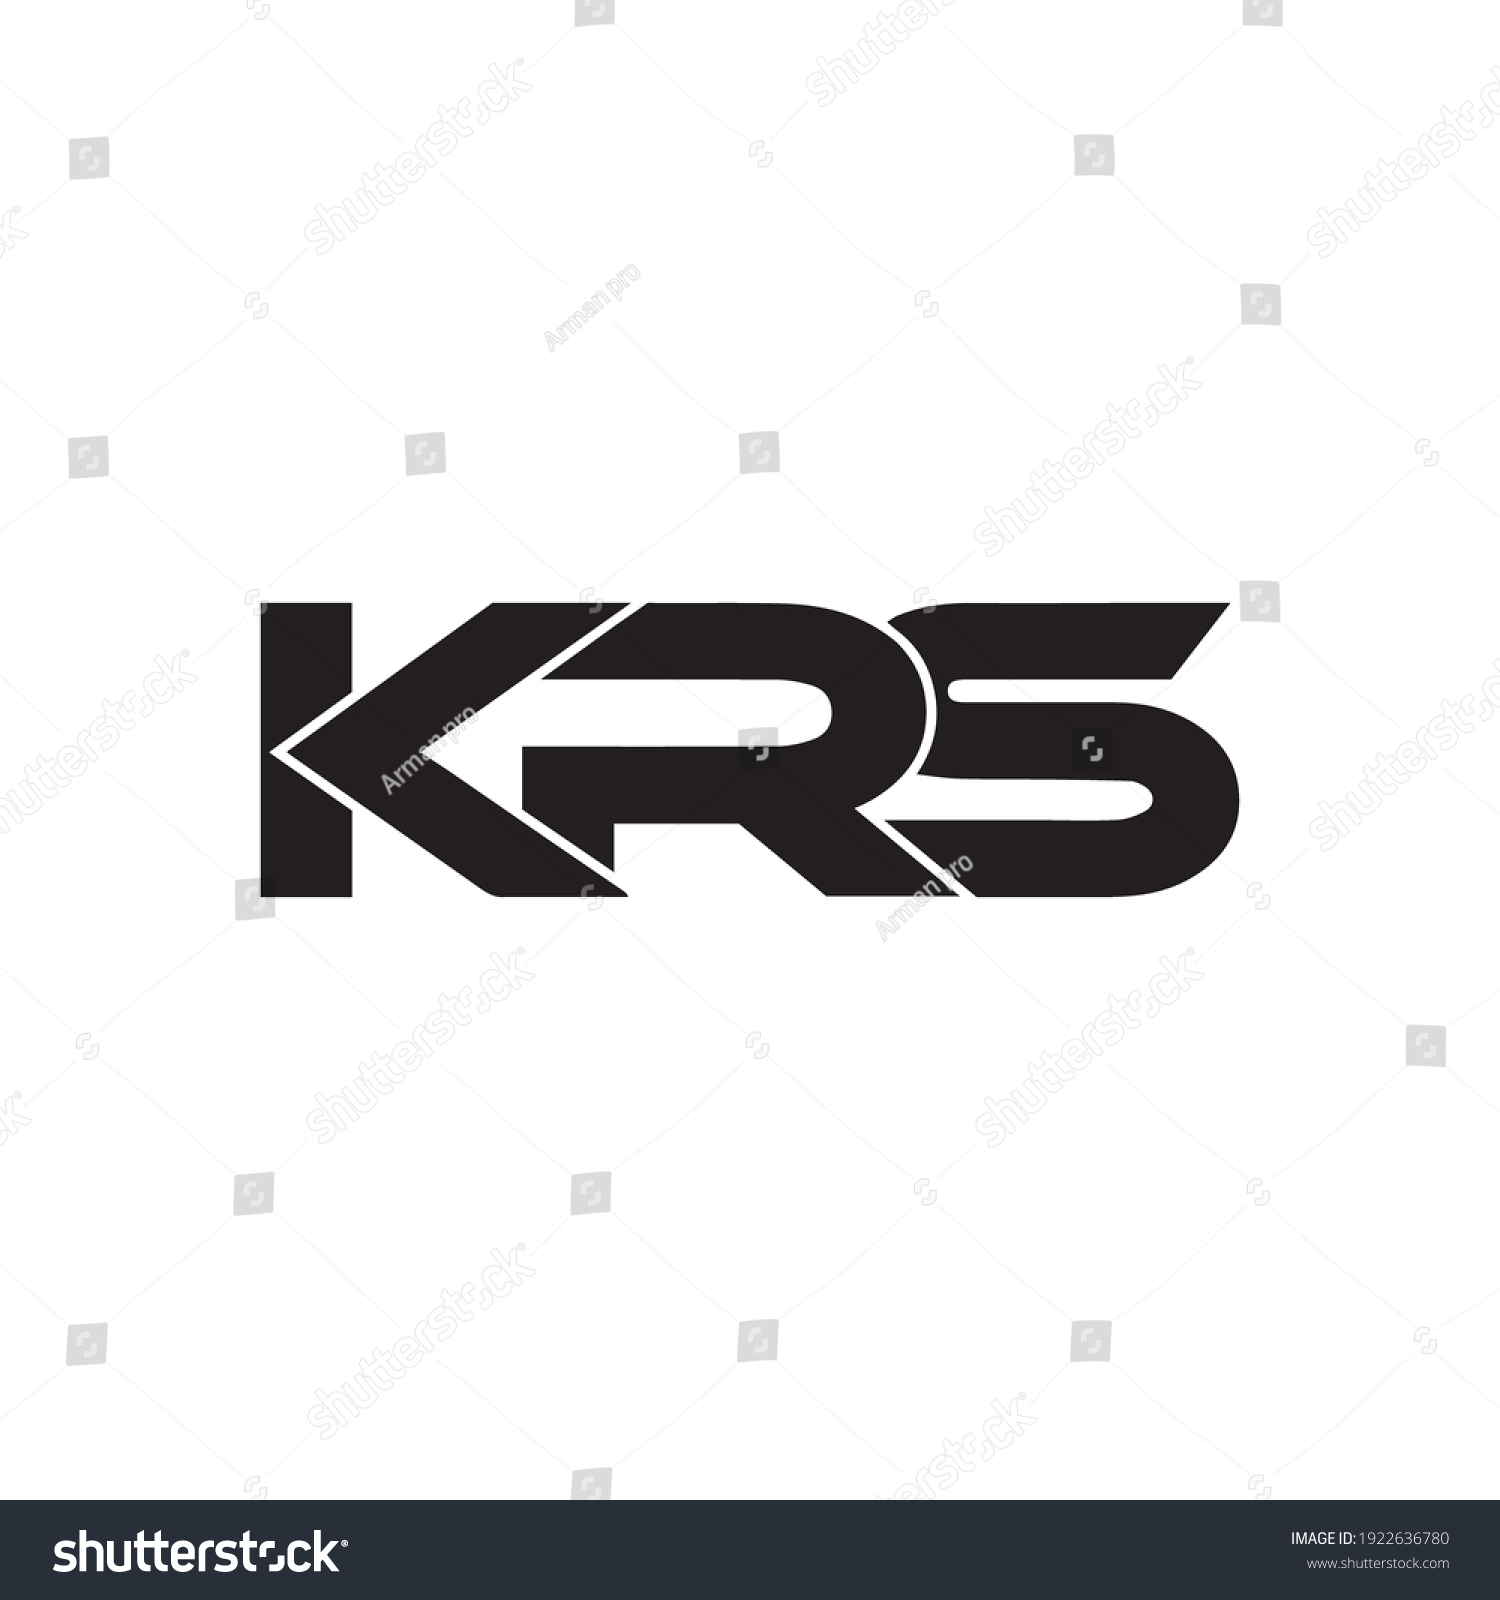 Krs logo logo krs